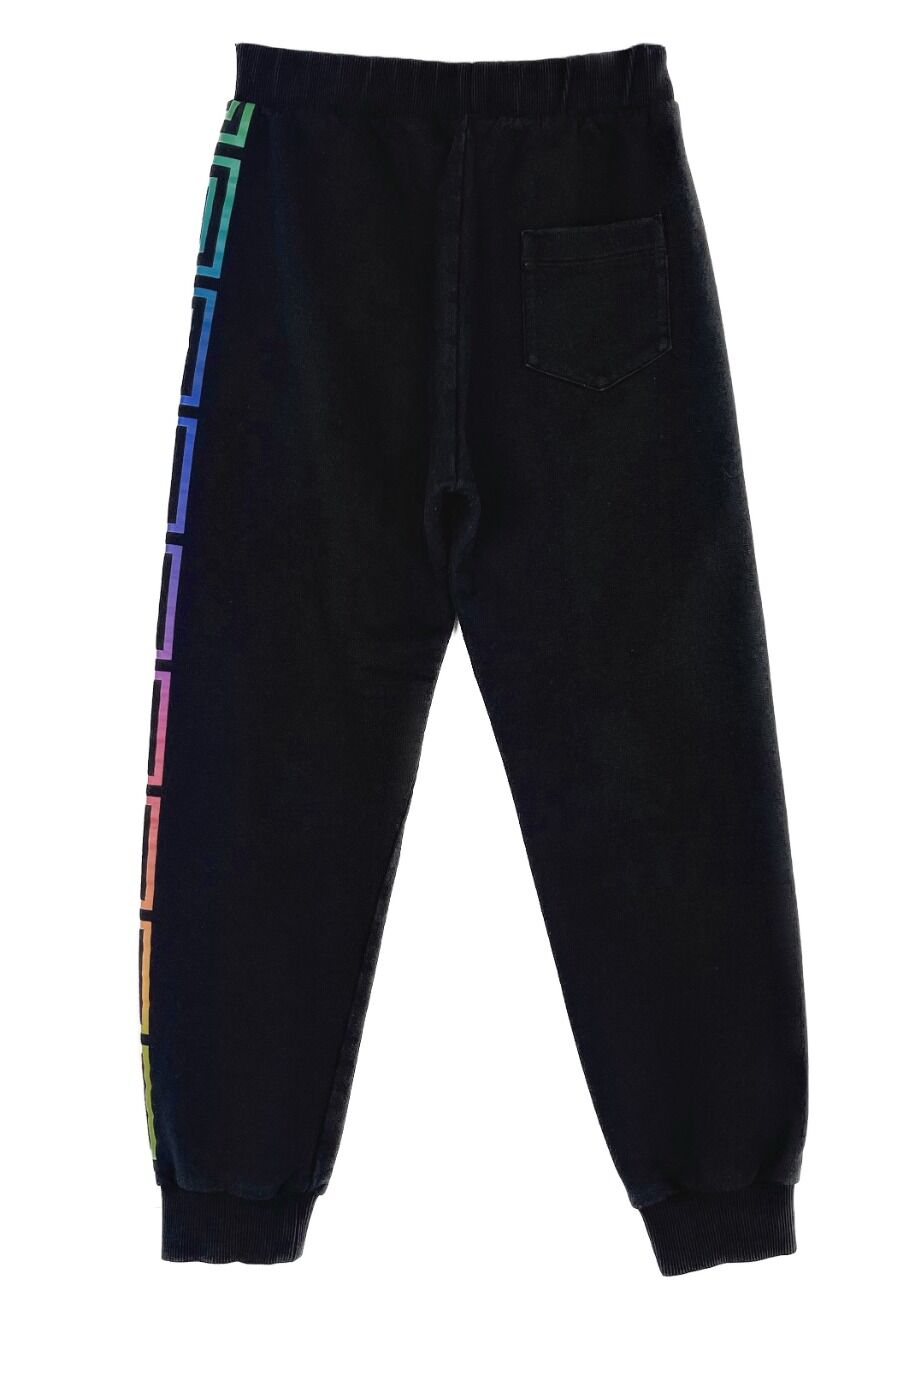 image 2 Детские спортивные брюки чёрного цвета с разноцветным принтом